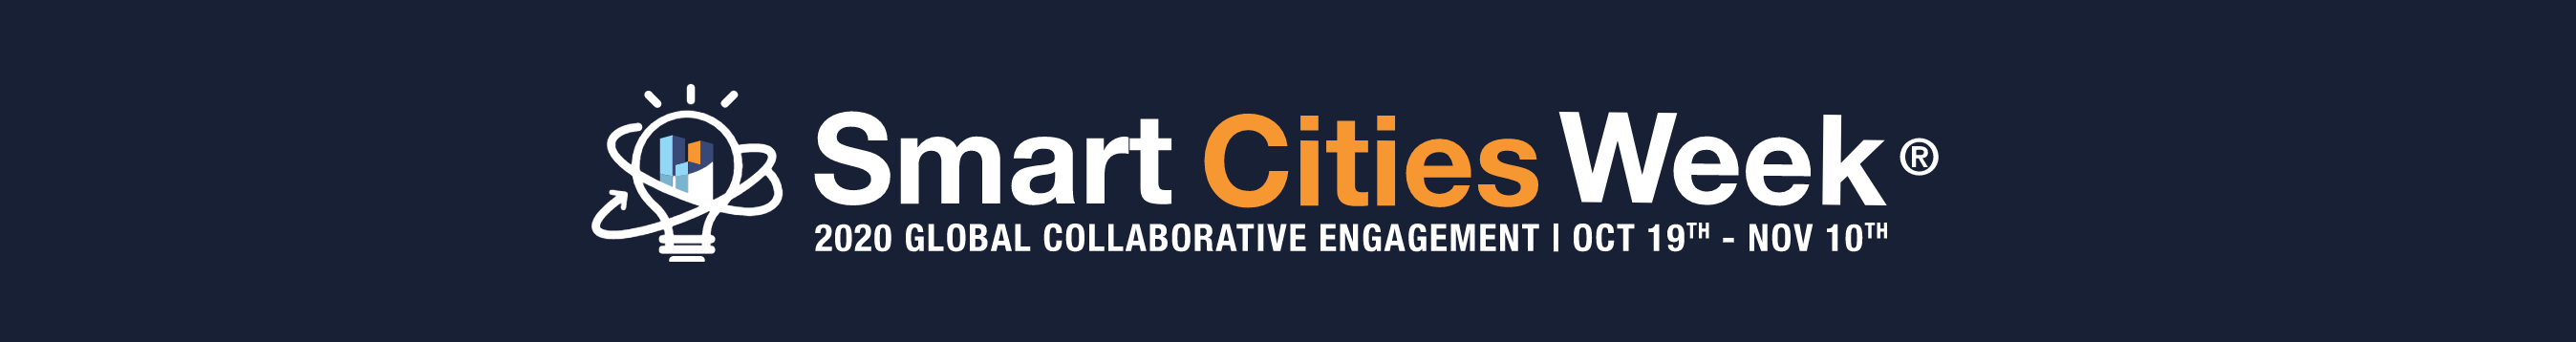 Smart Cities Week 2020 Banner